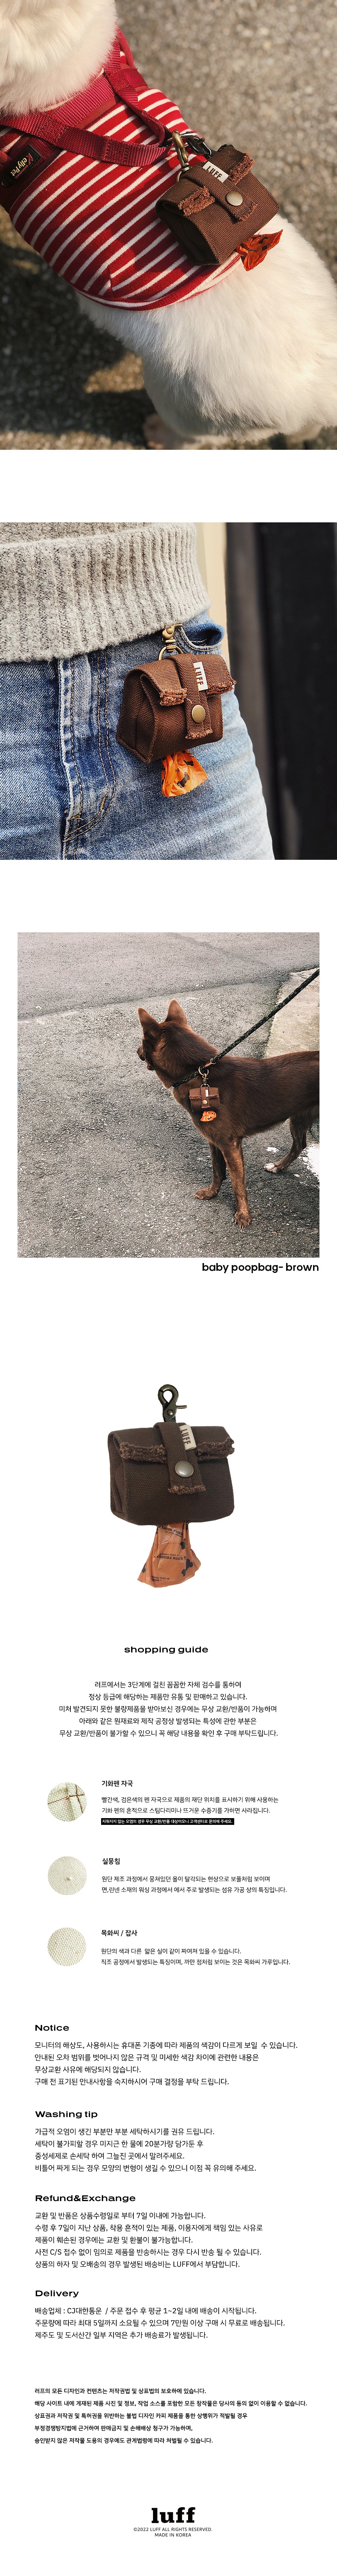 baby poopbag - brown